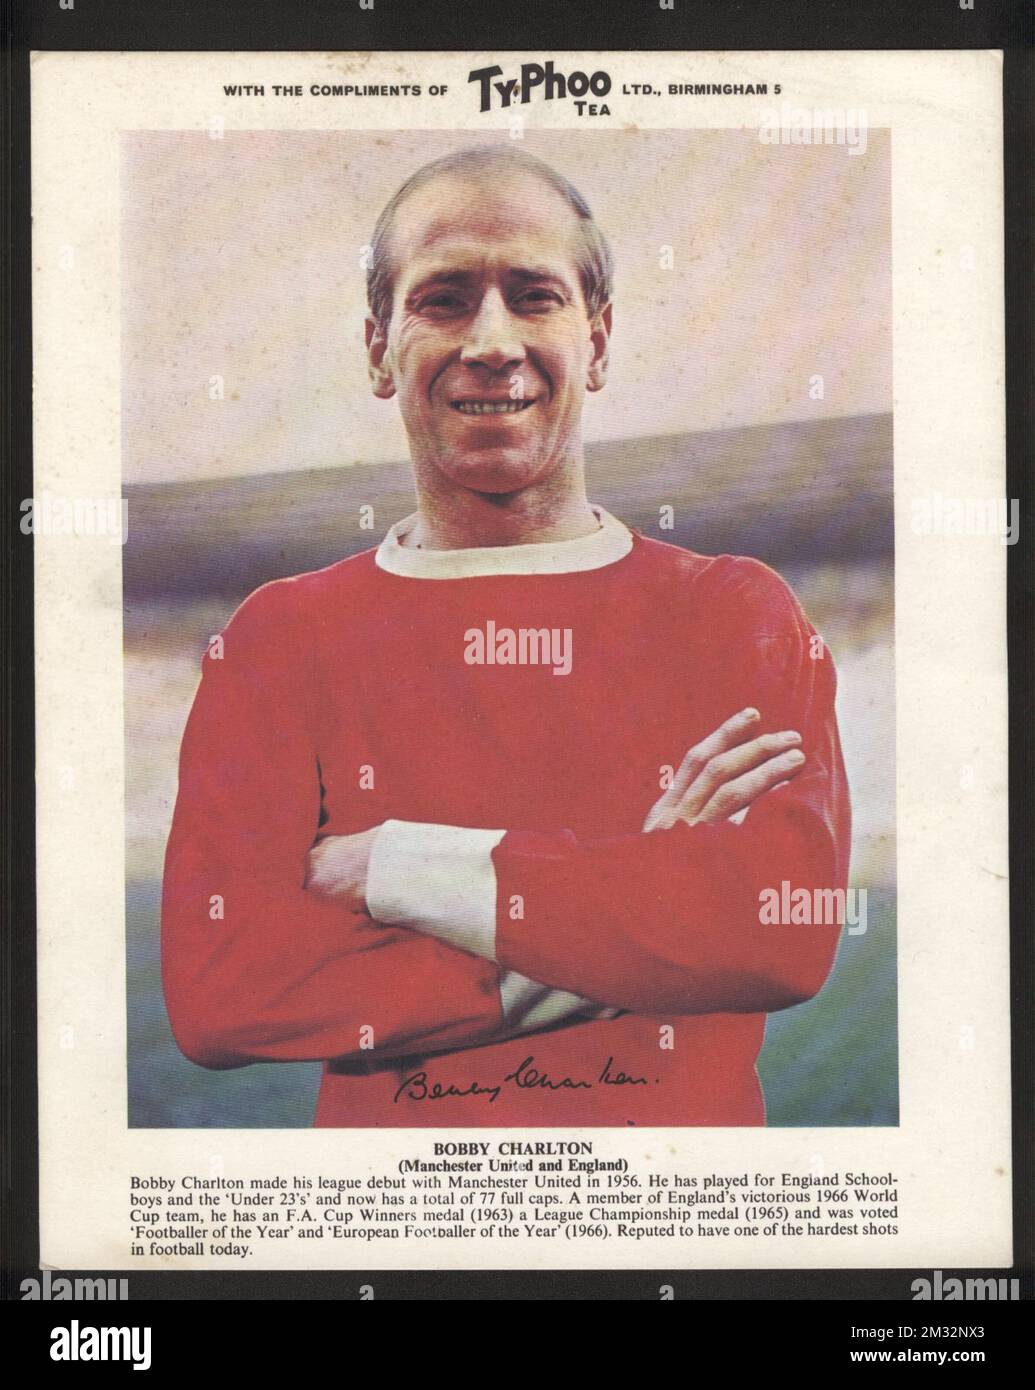 Ty-Phoo Tea großes Sammlerfoto von Bobby Charlton, Manchester United und England aus den 1960er Jahren mit Details seiner Karriere. Stockfoto